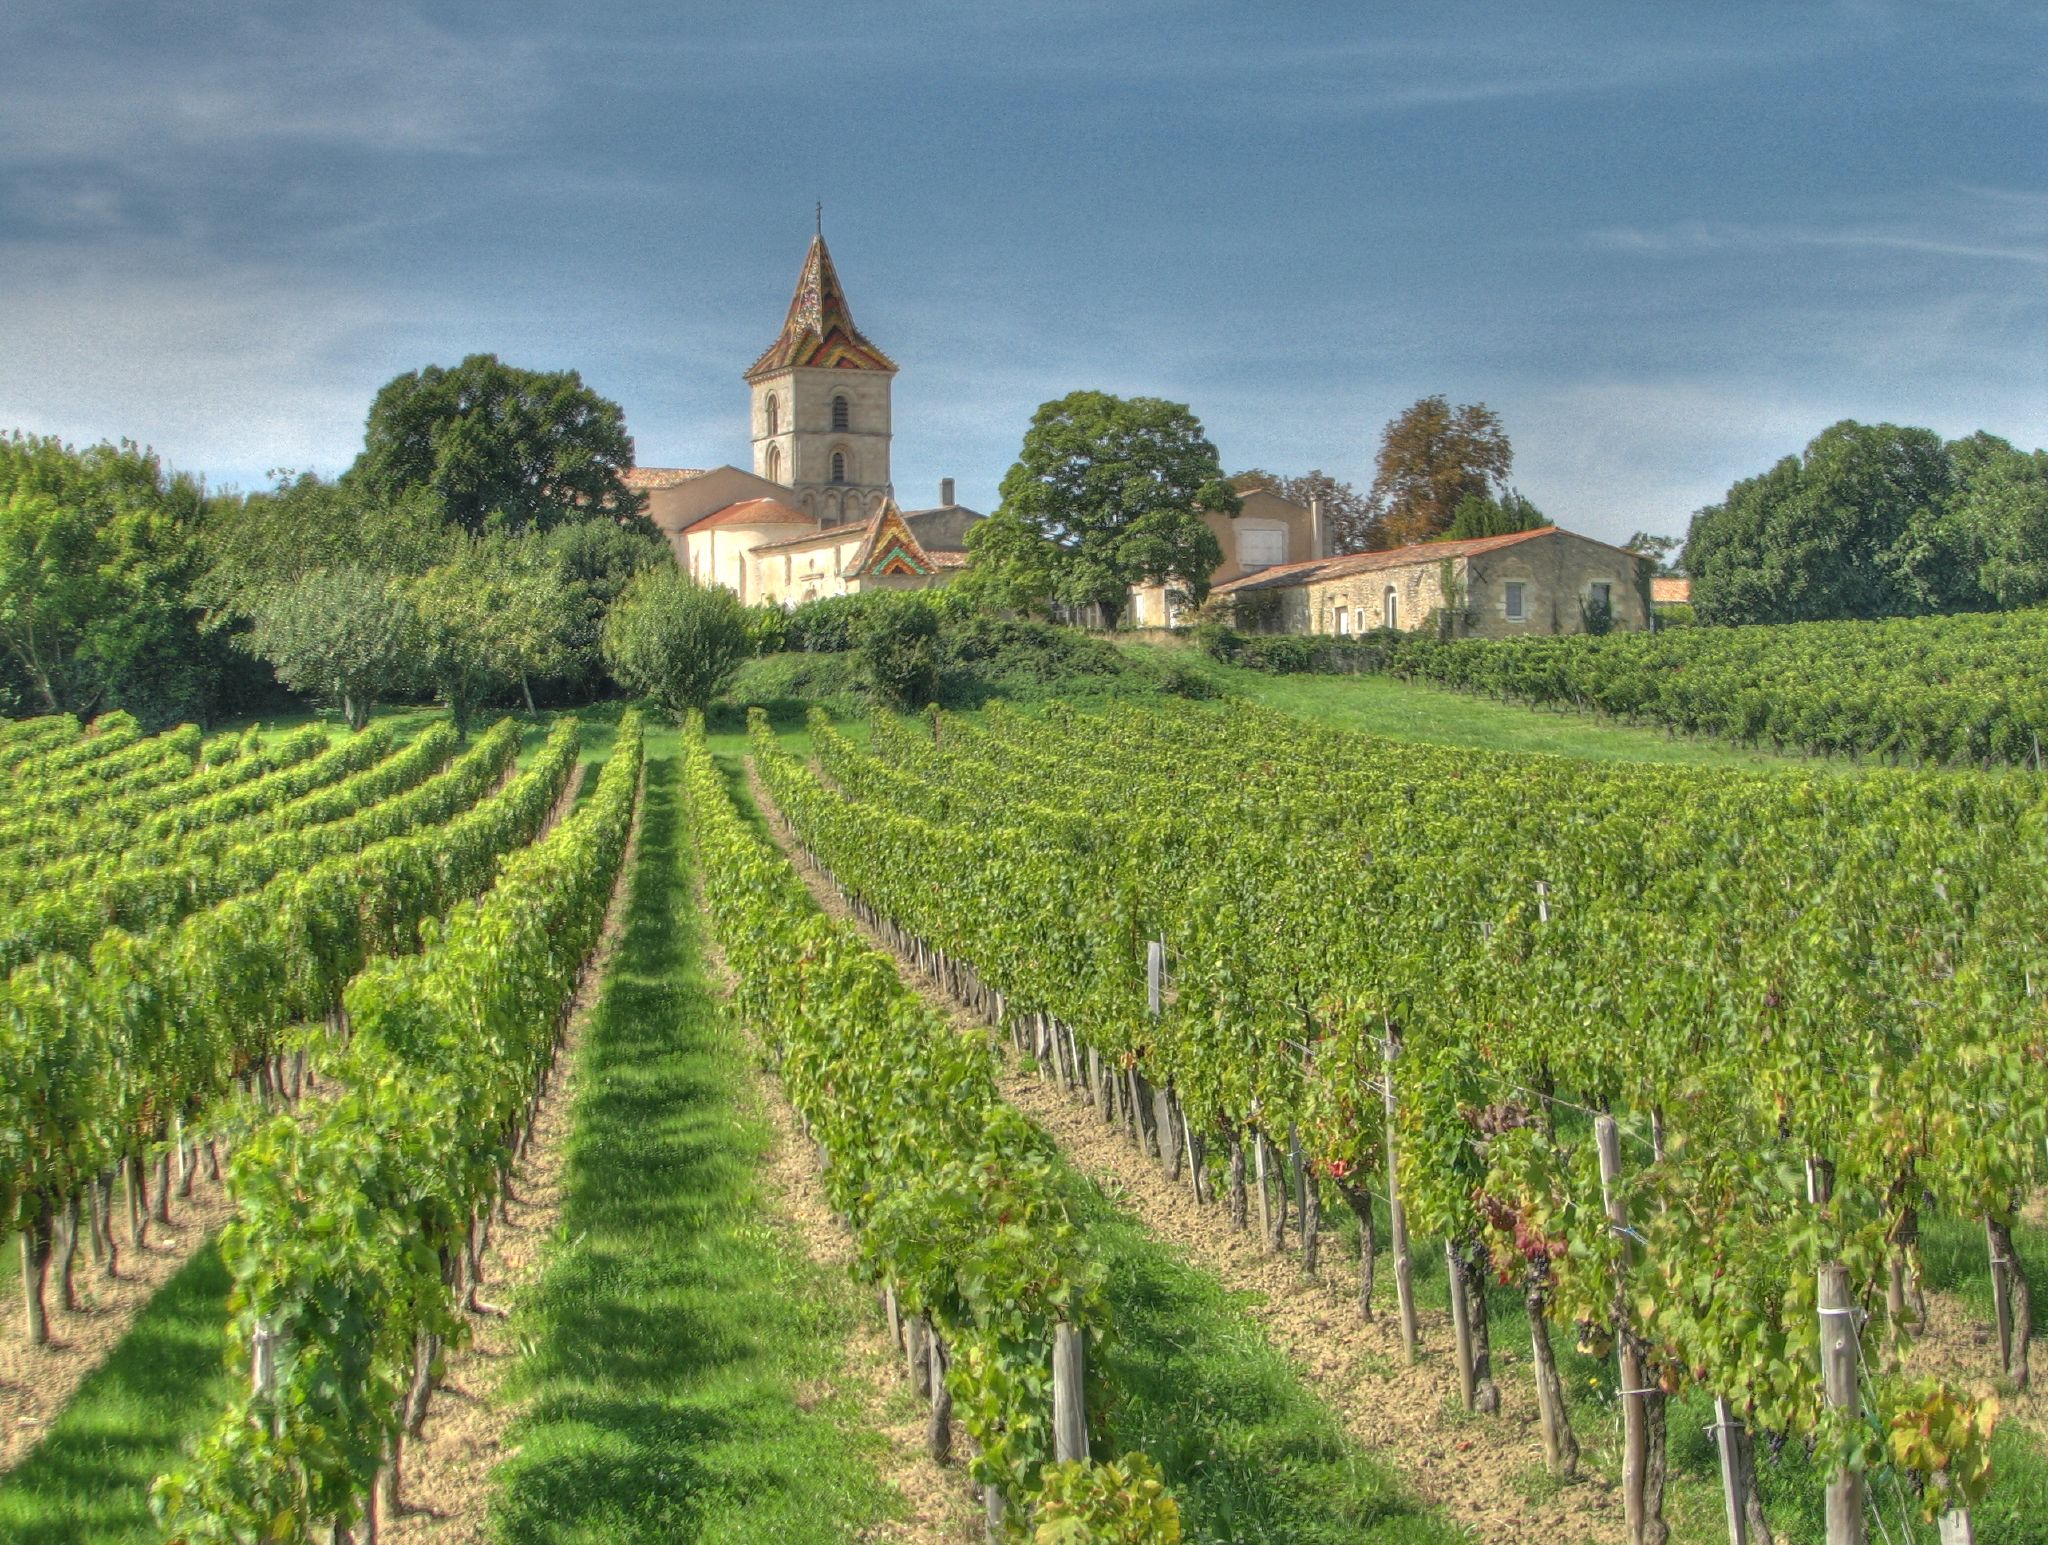 Η περιοχή όπου παράγεται το κρασί είναι ένας σημαντικός παράγοντας για τον προσδιορισμό των καλύτερων κρασιών για επενδύσεις το 2022 & 2023